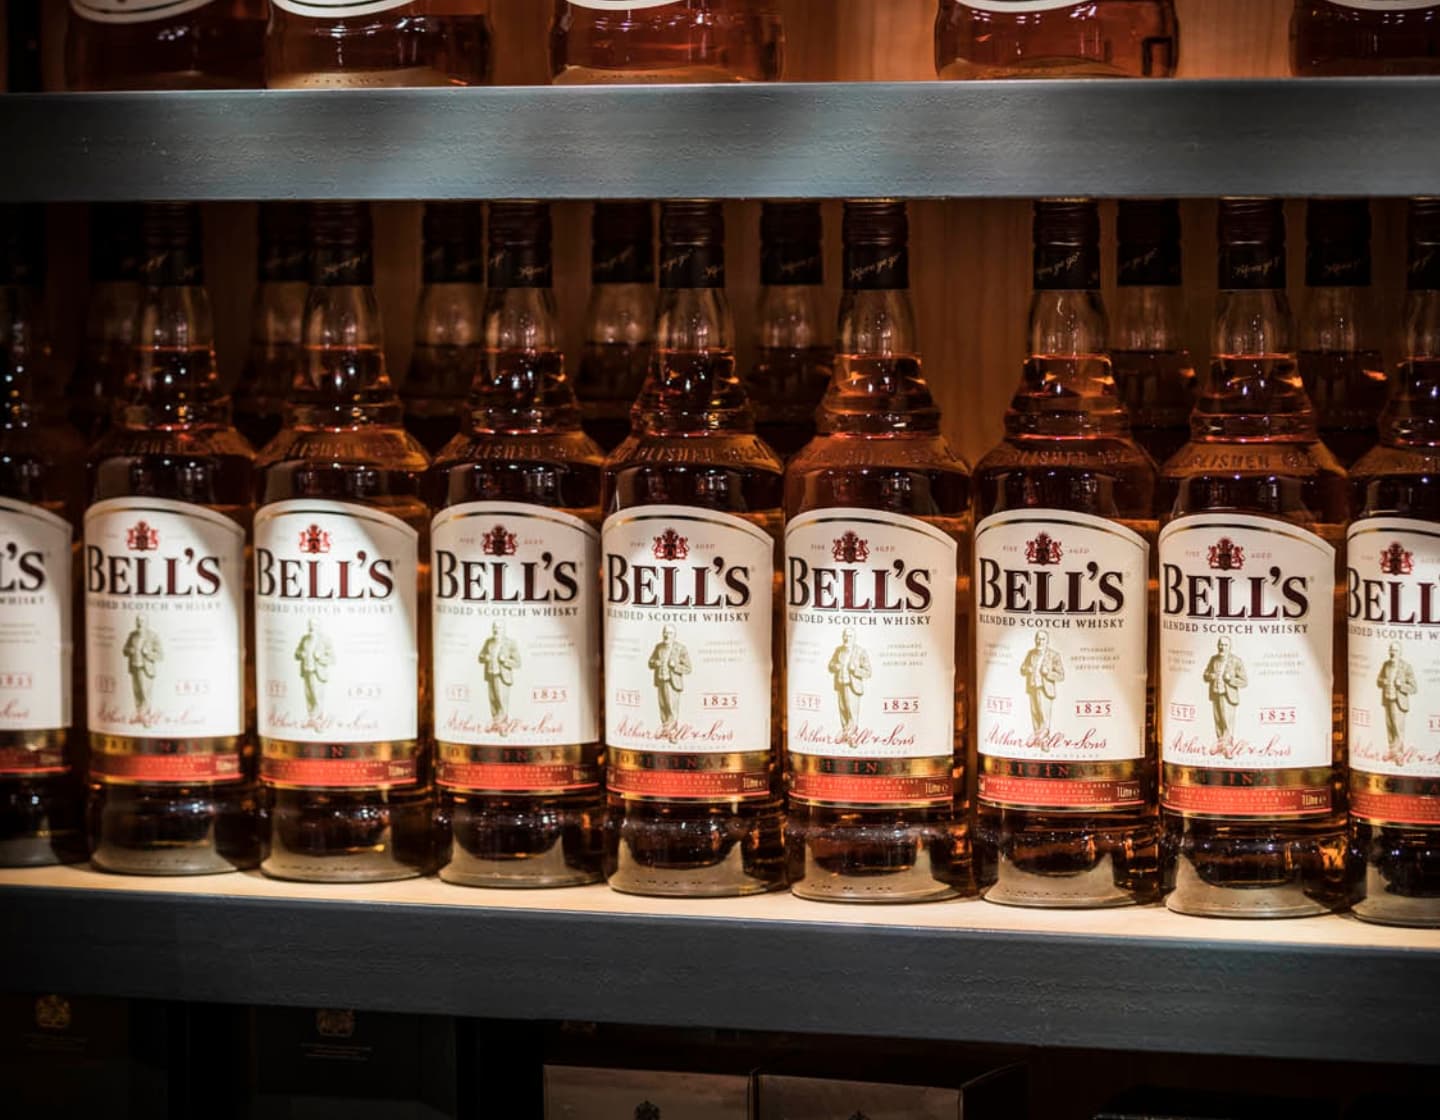 Row of Bell's whisky bottles